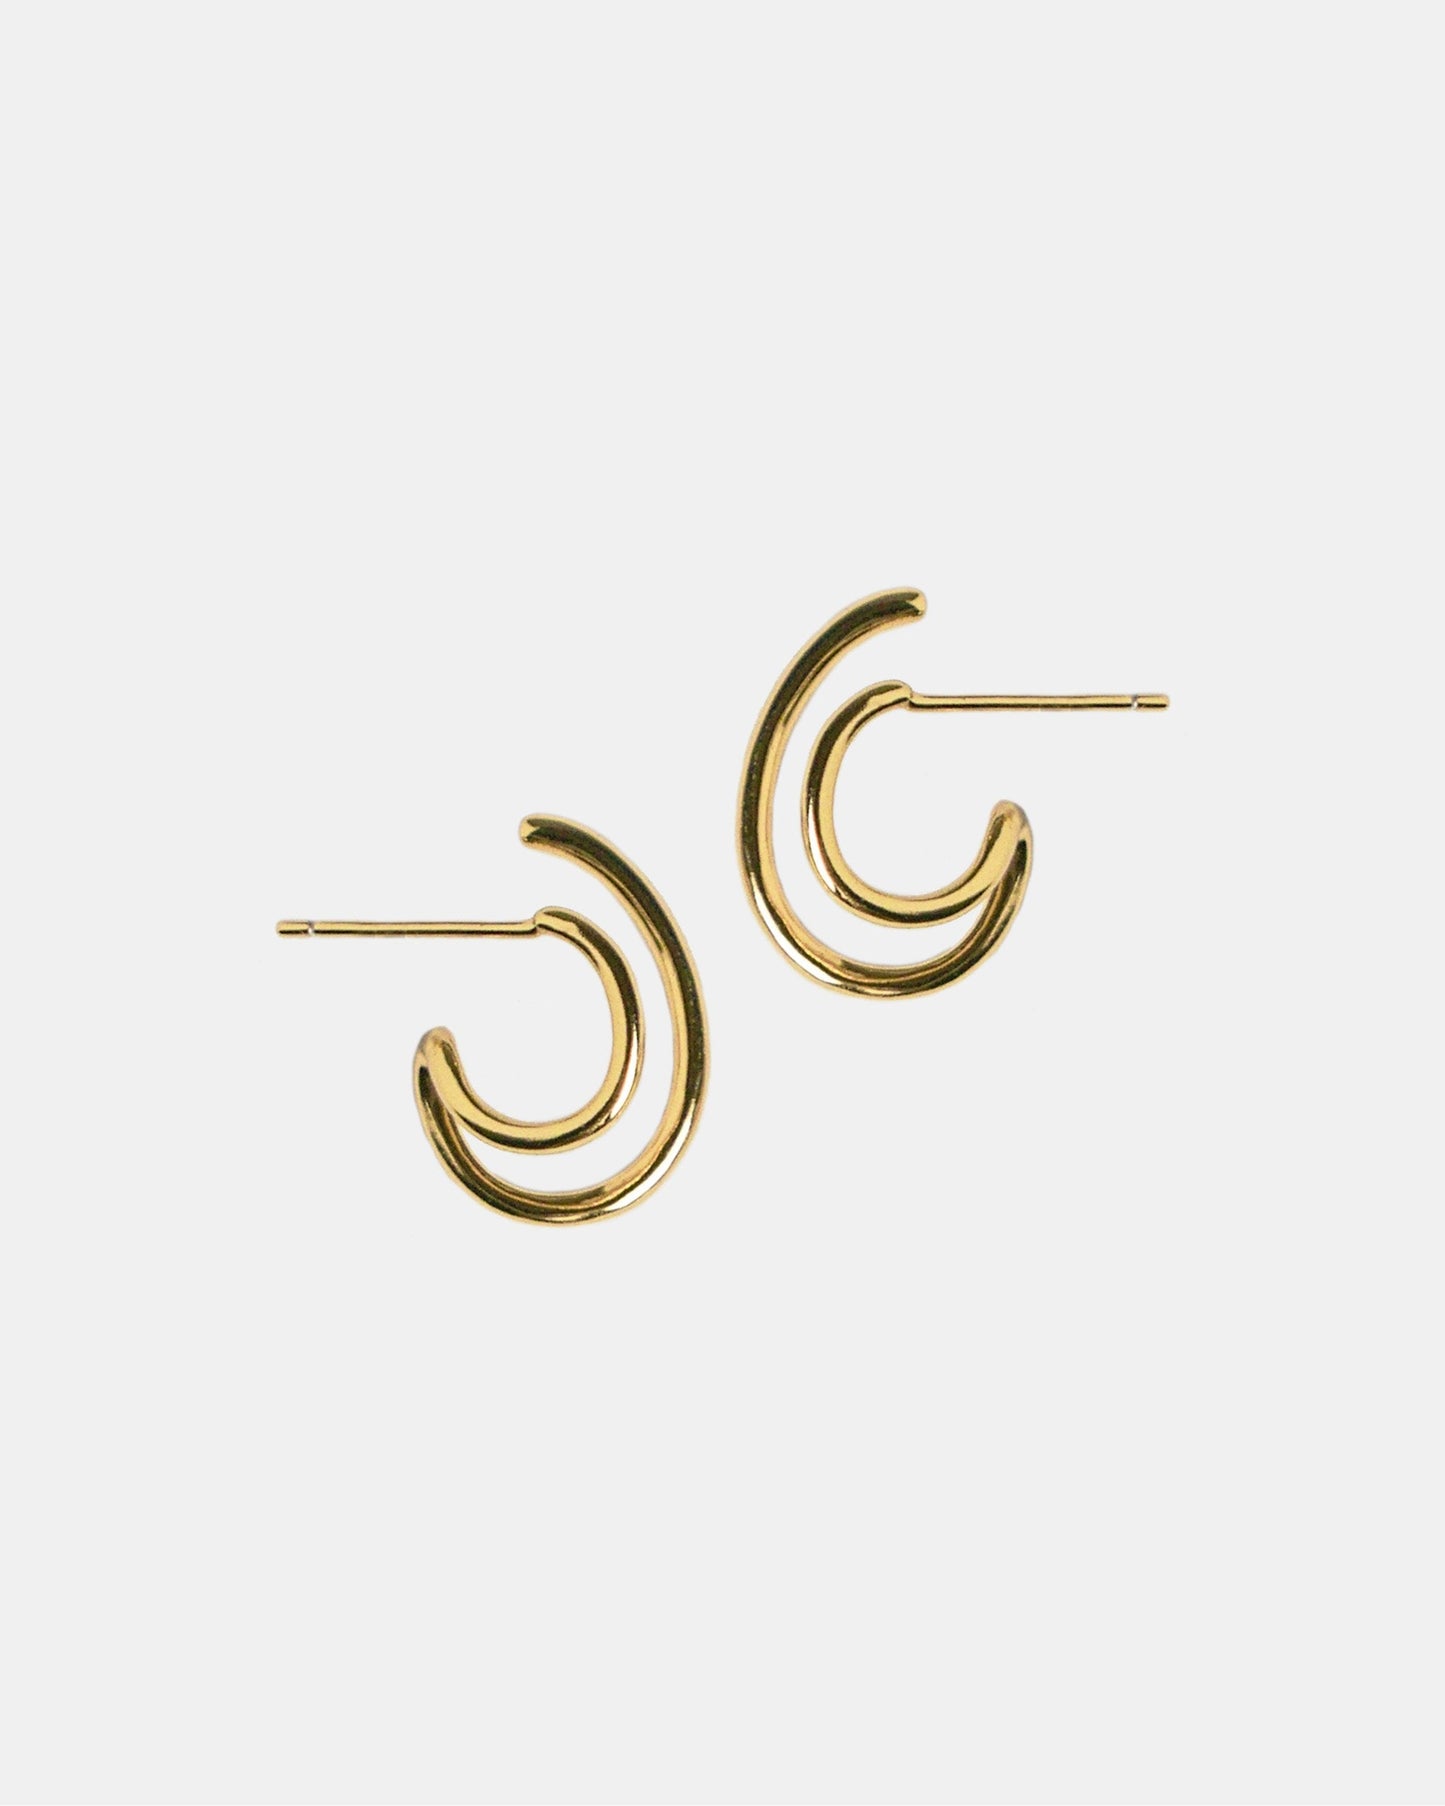 [Reject] Loop Earrings in Gold